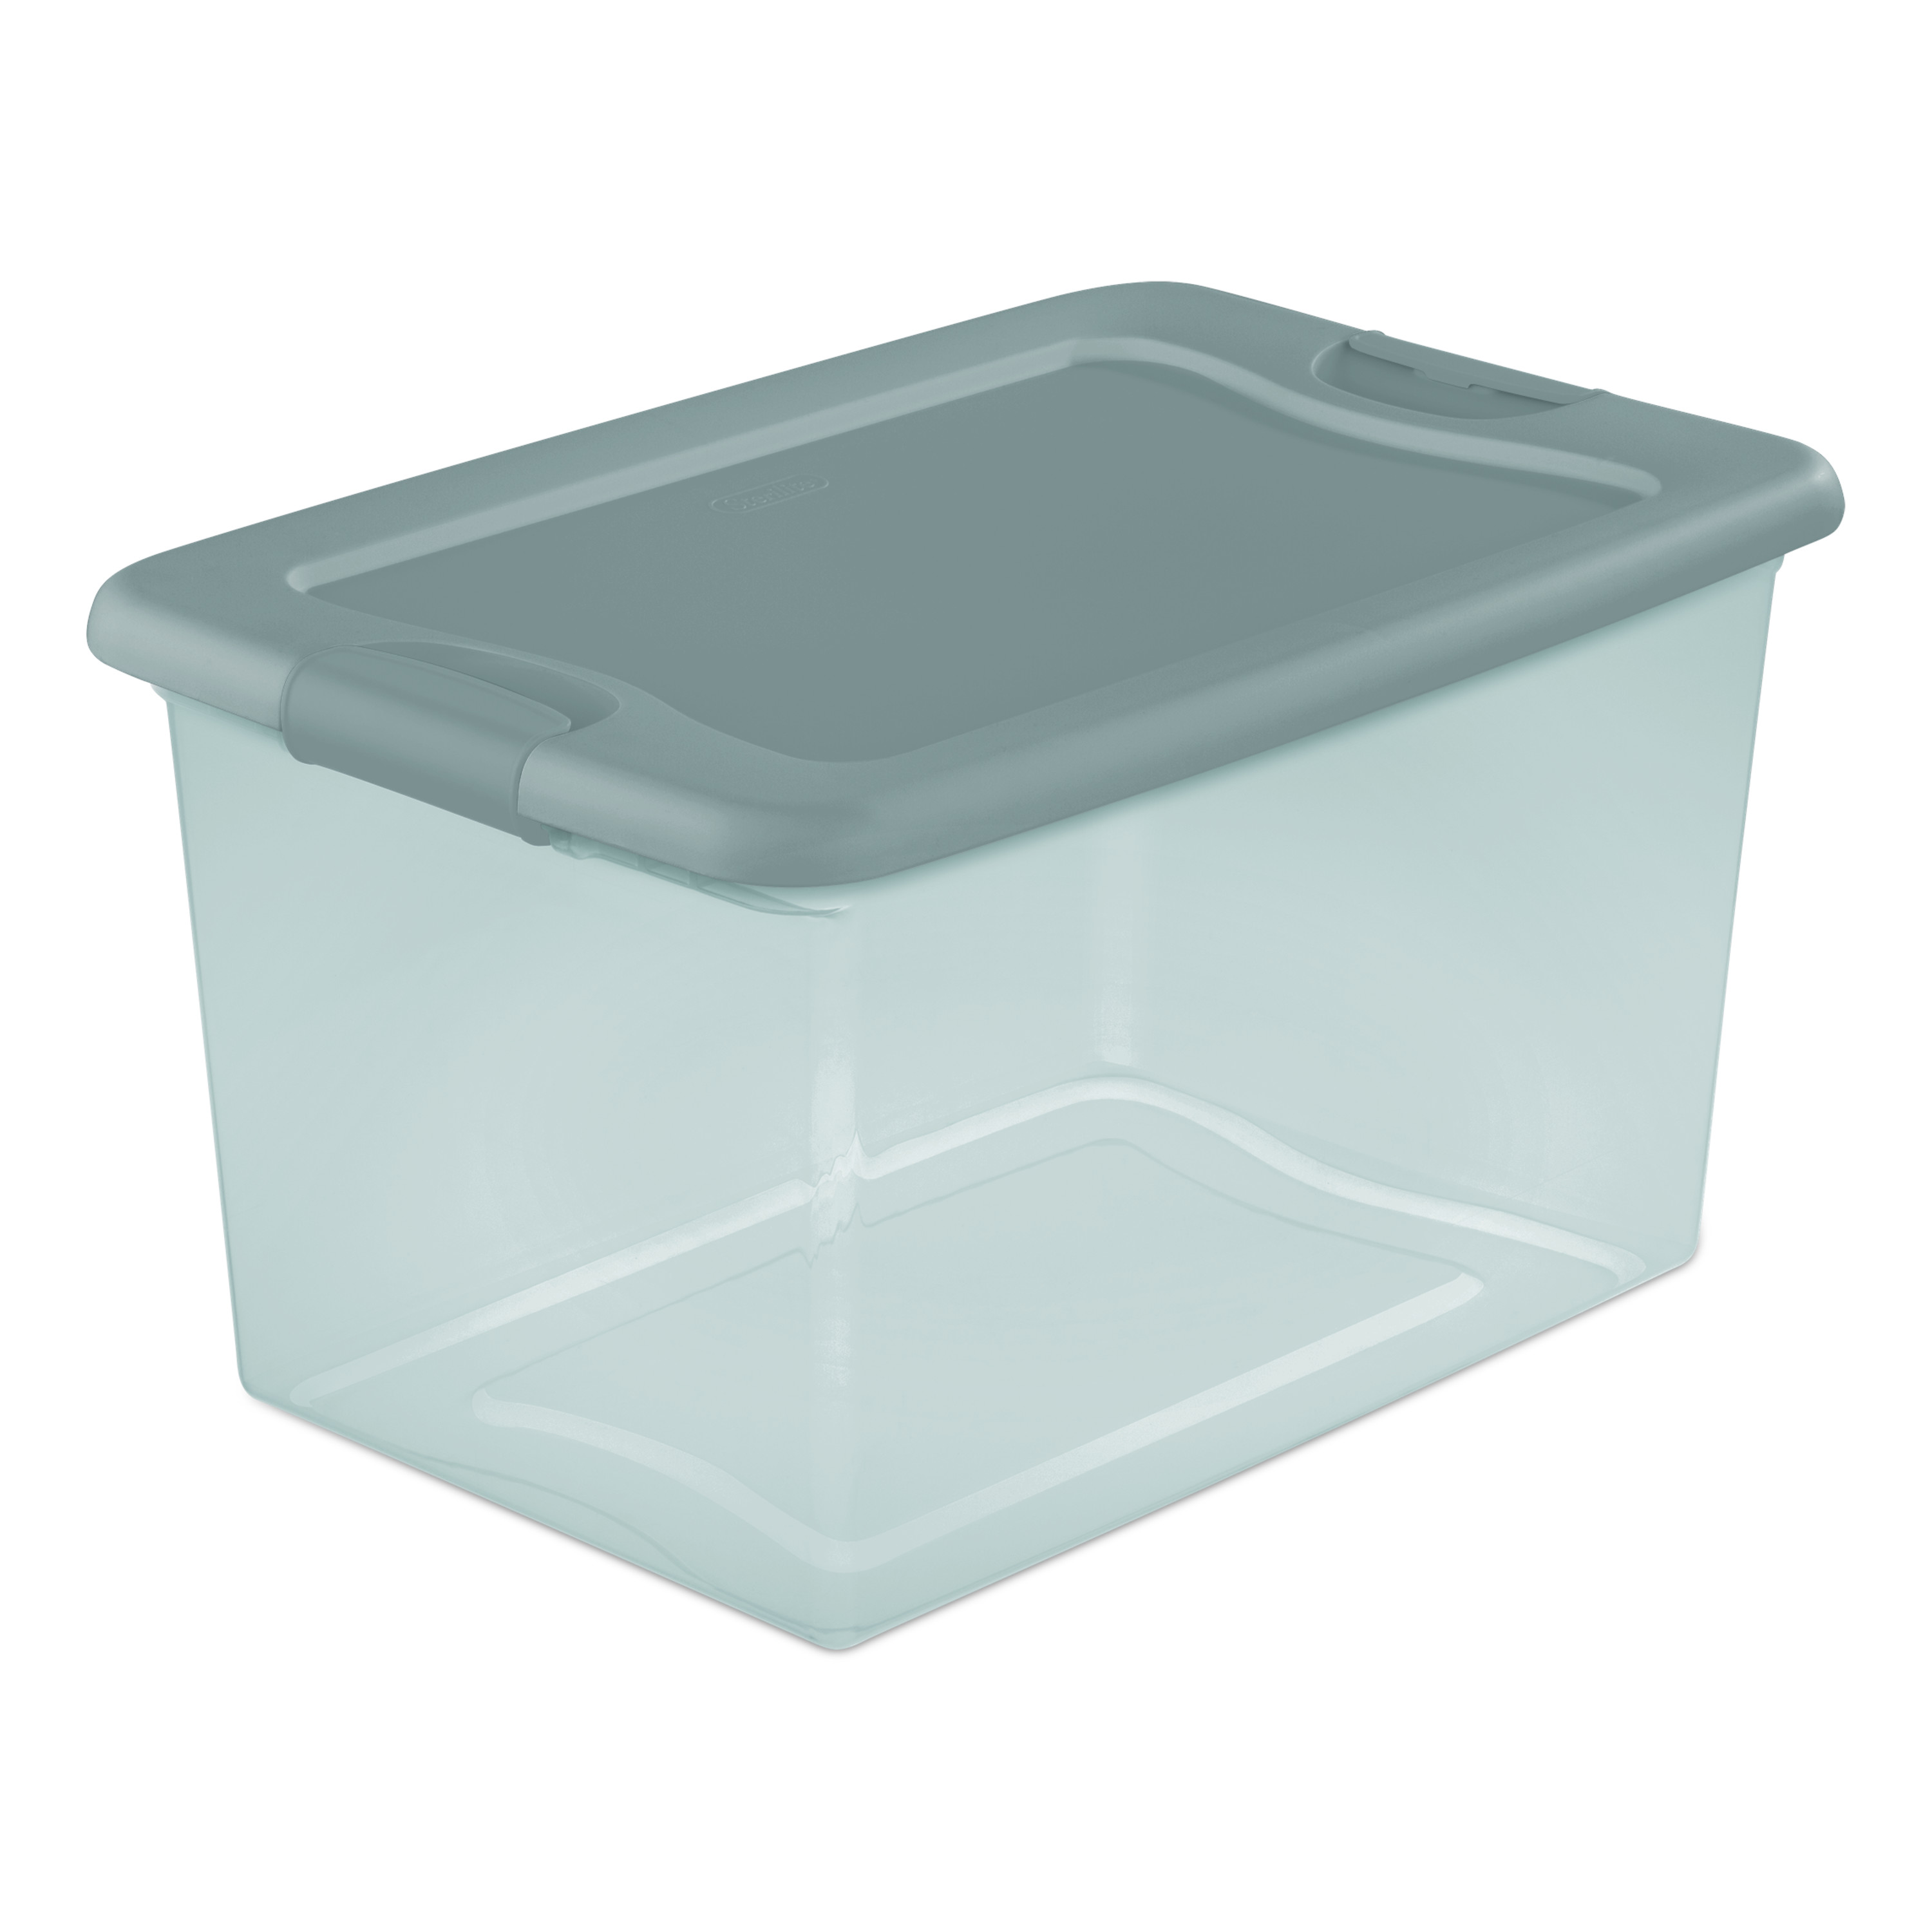 Sterilite 64 Qt. Latching Box Plastic, Aqua Slate Tint - image 1 of 4